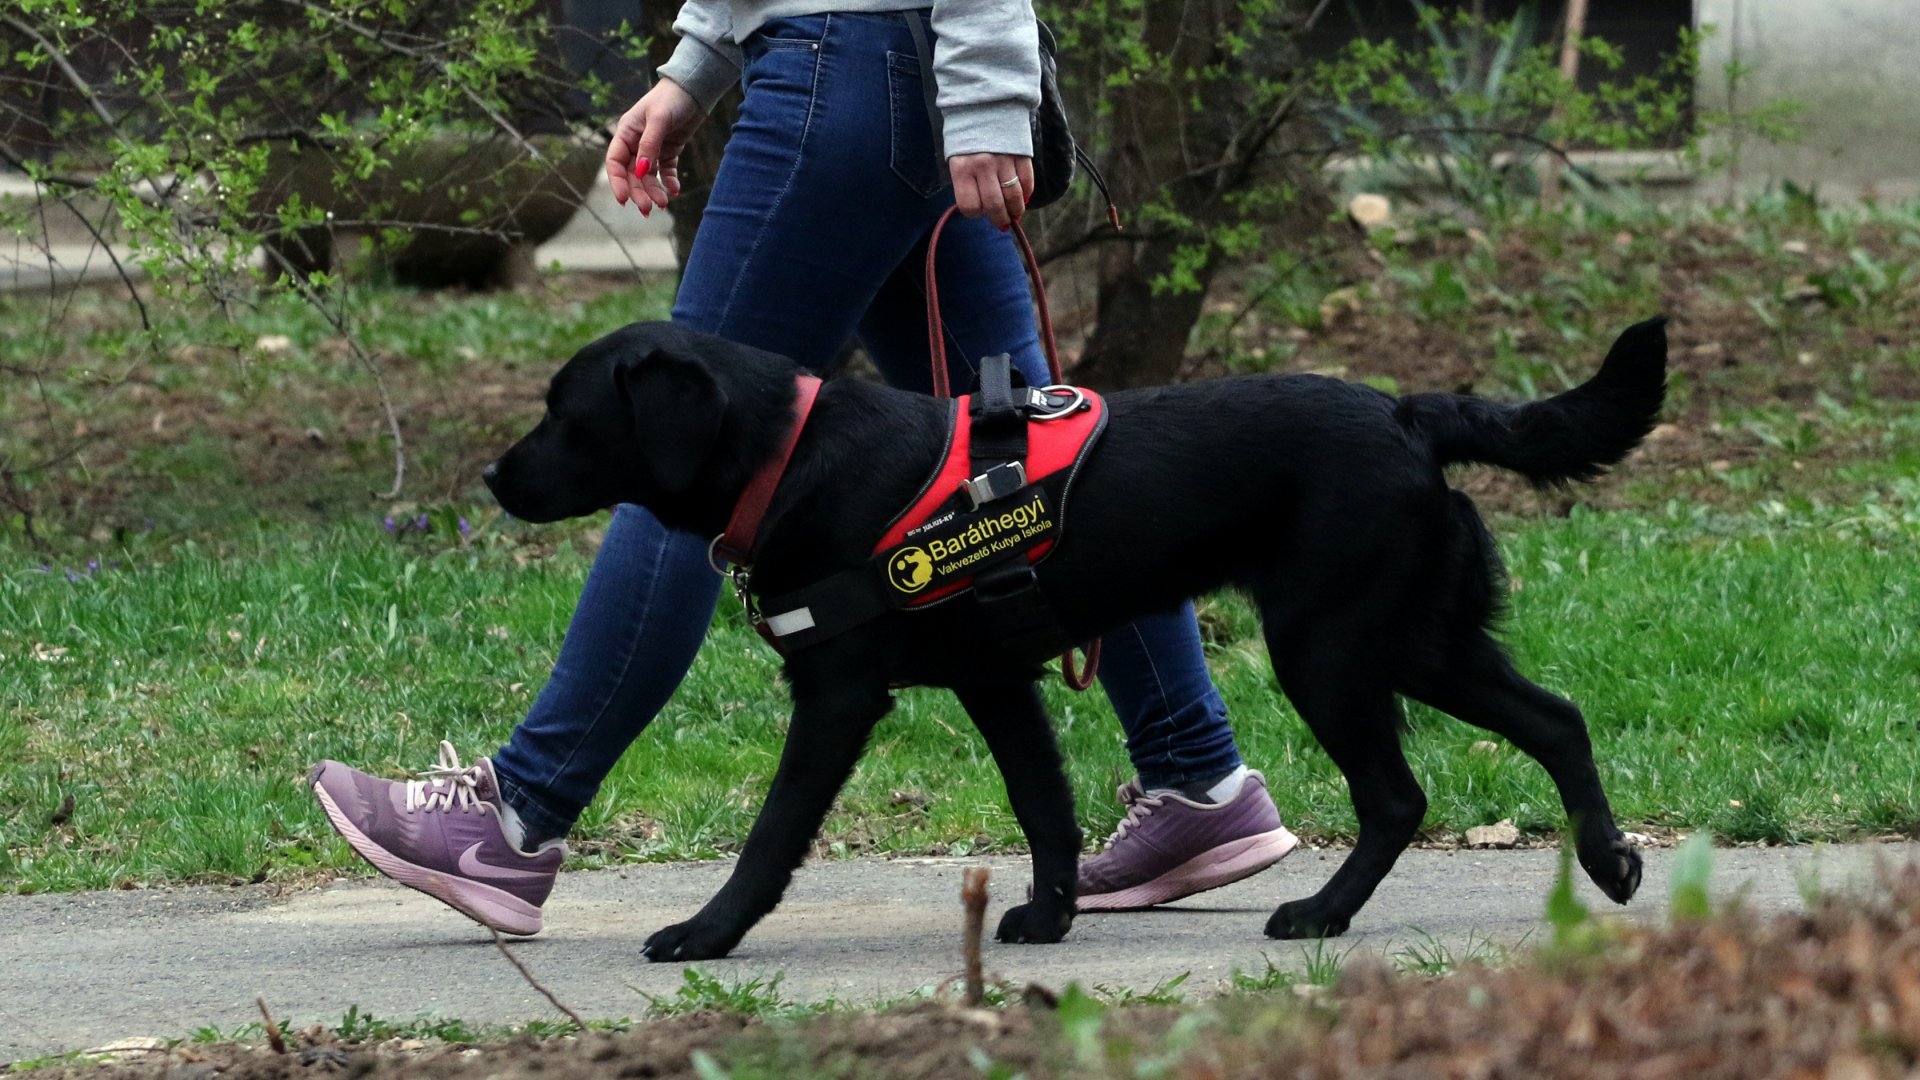 Királyné Barkóczi Emese, a Baráthegyi Vakvezetõ Kutyaiskola kutyakiképzõje Milka nevû kutyáját sétáltatja Miskolcon 2020. március 21-én.